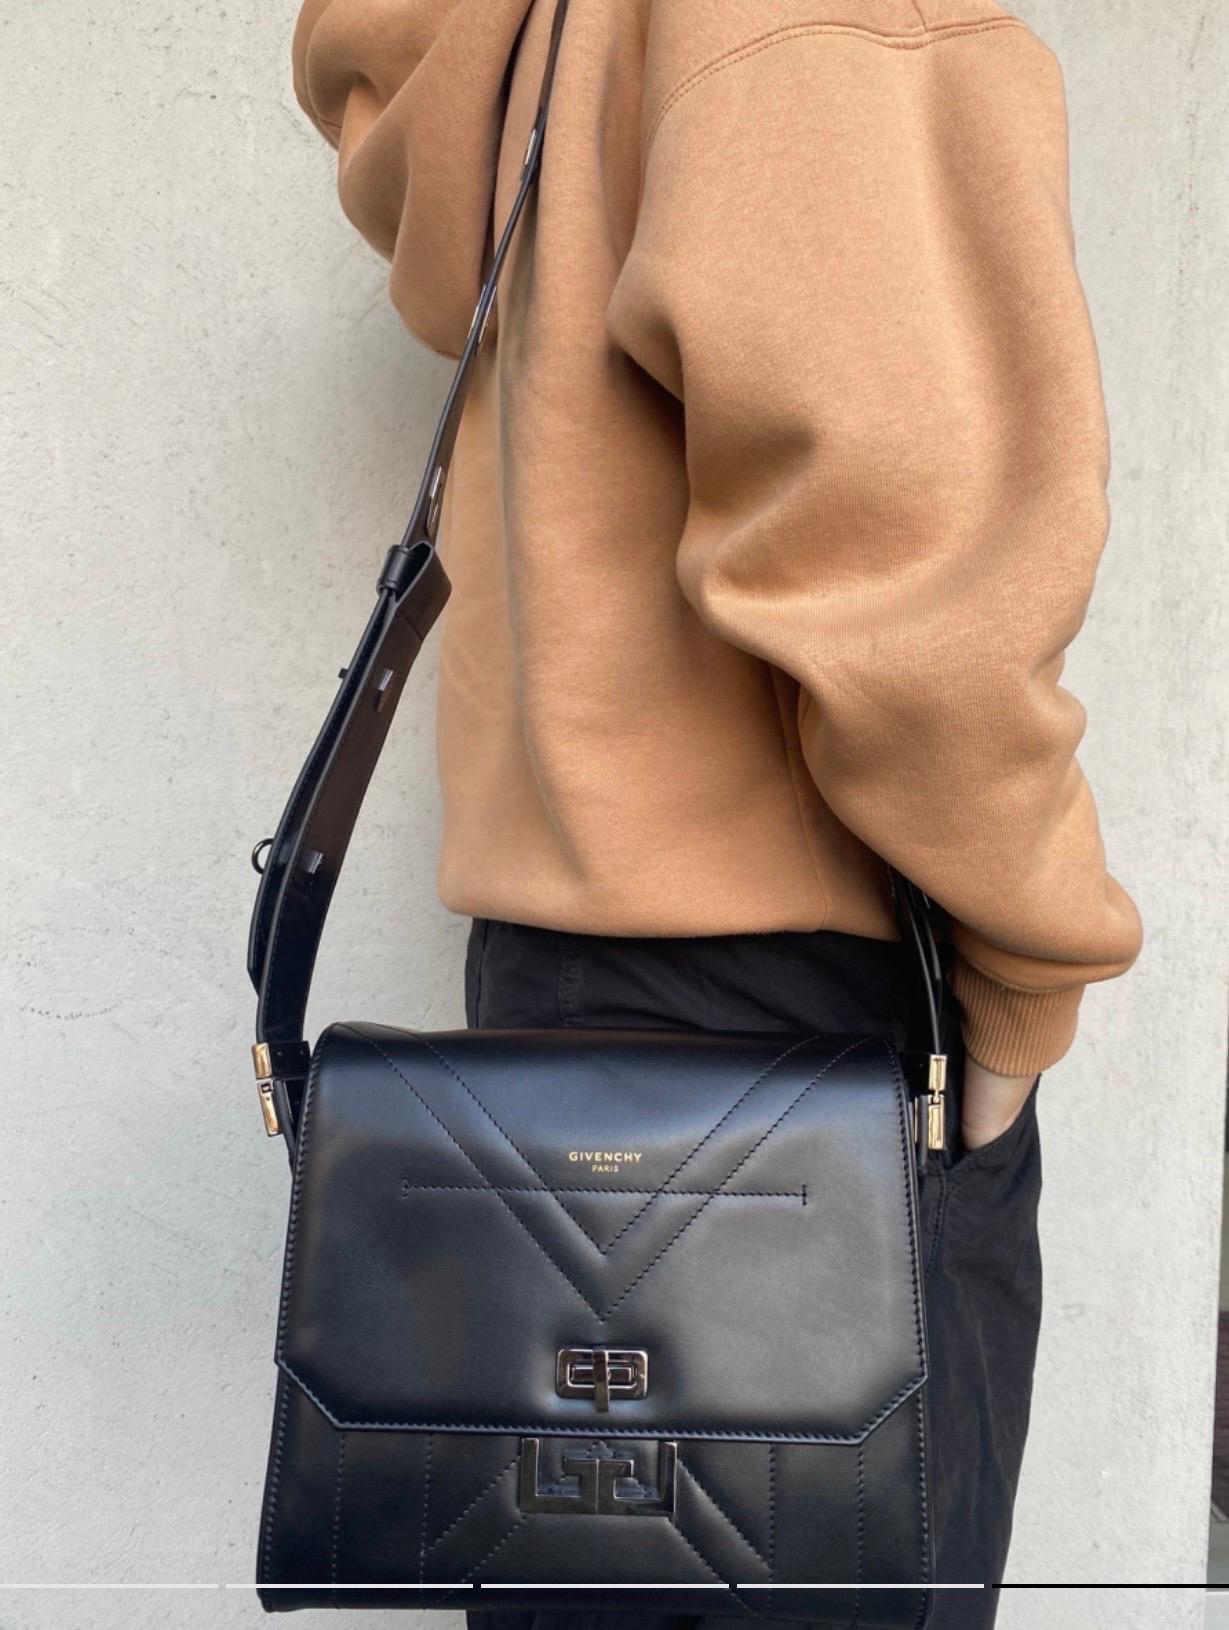 Givenchy Eden Black leather Shoulder Bag For Sale 3